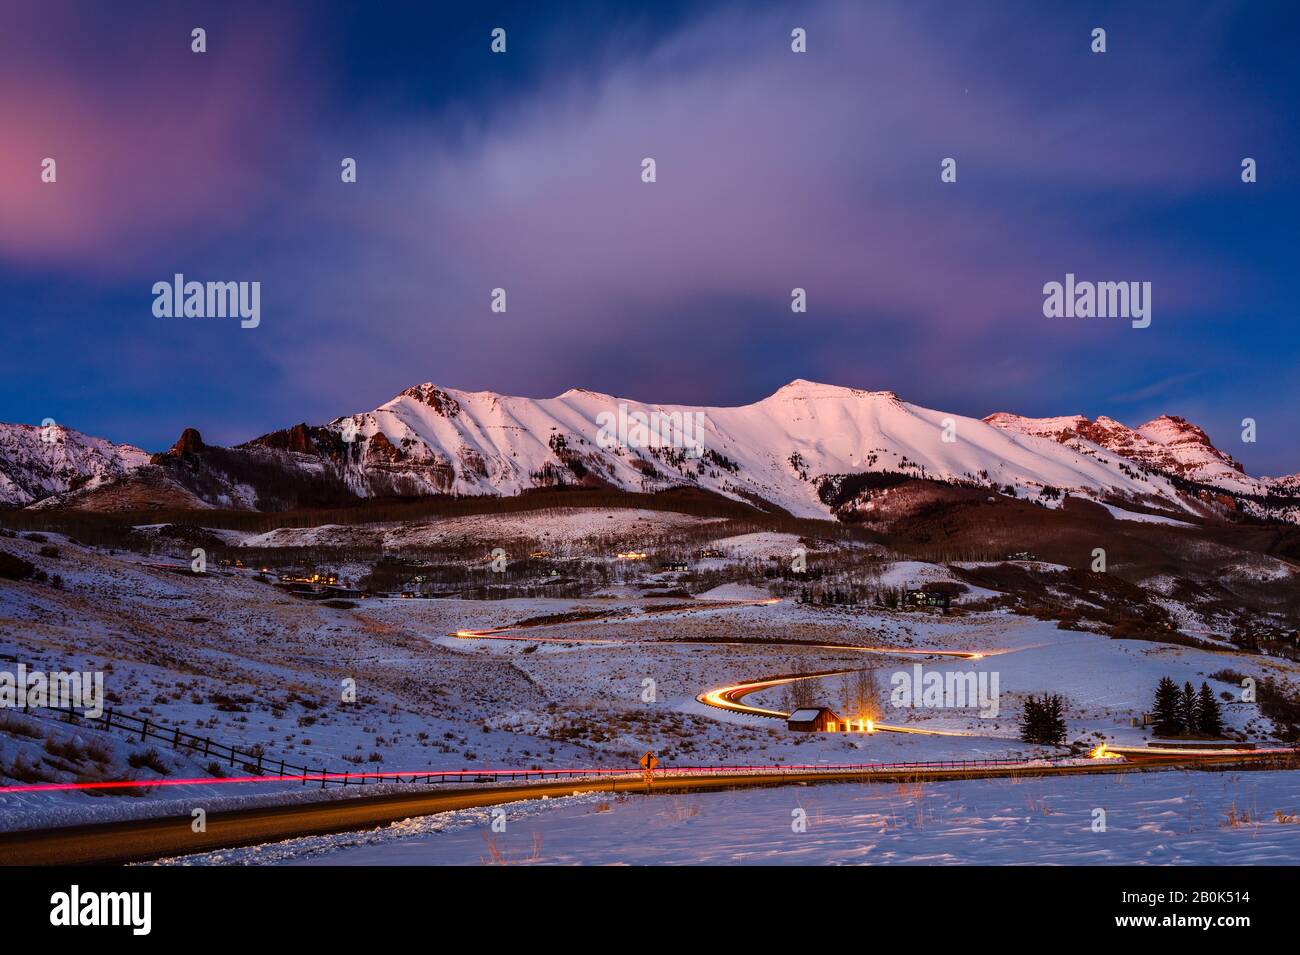 Le montagne di San Juan a Telluride, Colorado paesaggio invernale con neve e alpenglow Foto Stock